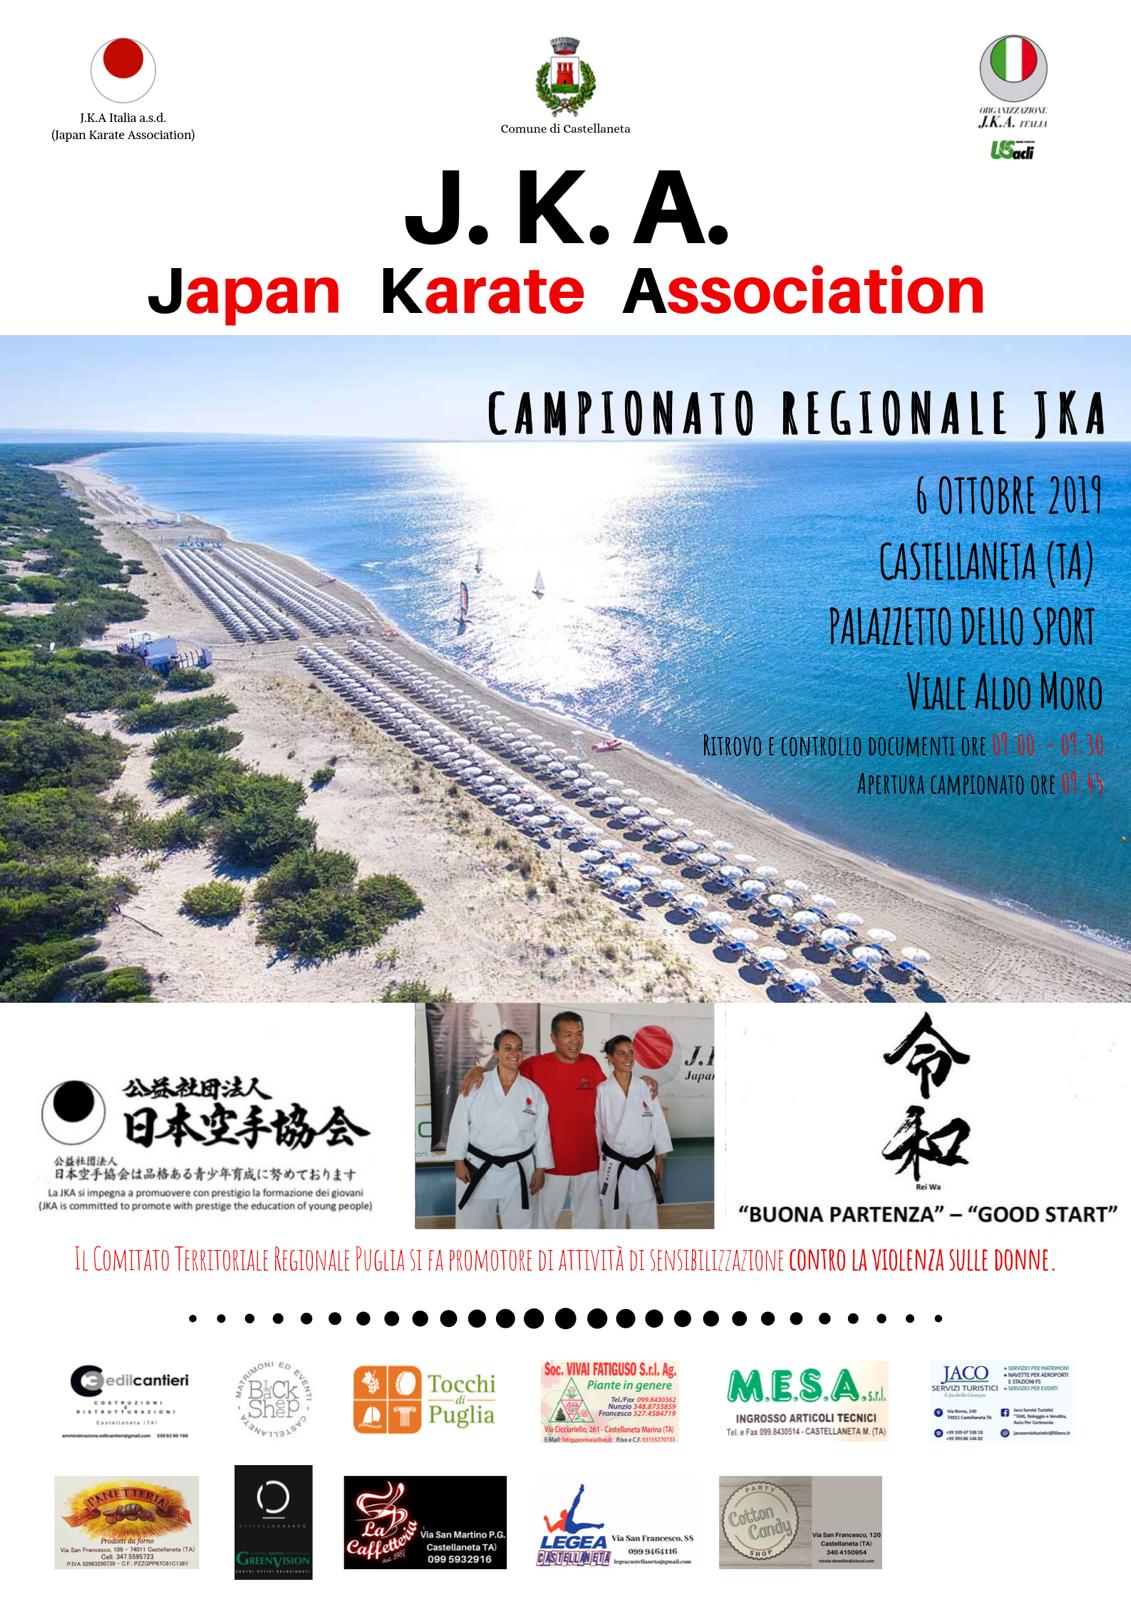 A Castellaneta le regionali del campionato italiano di Karate